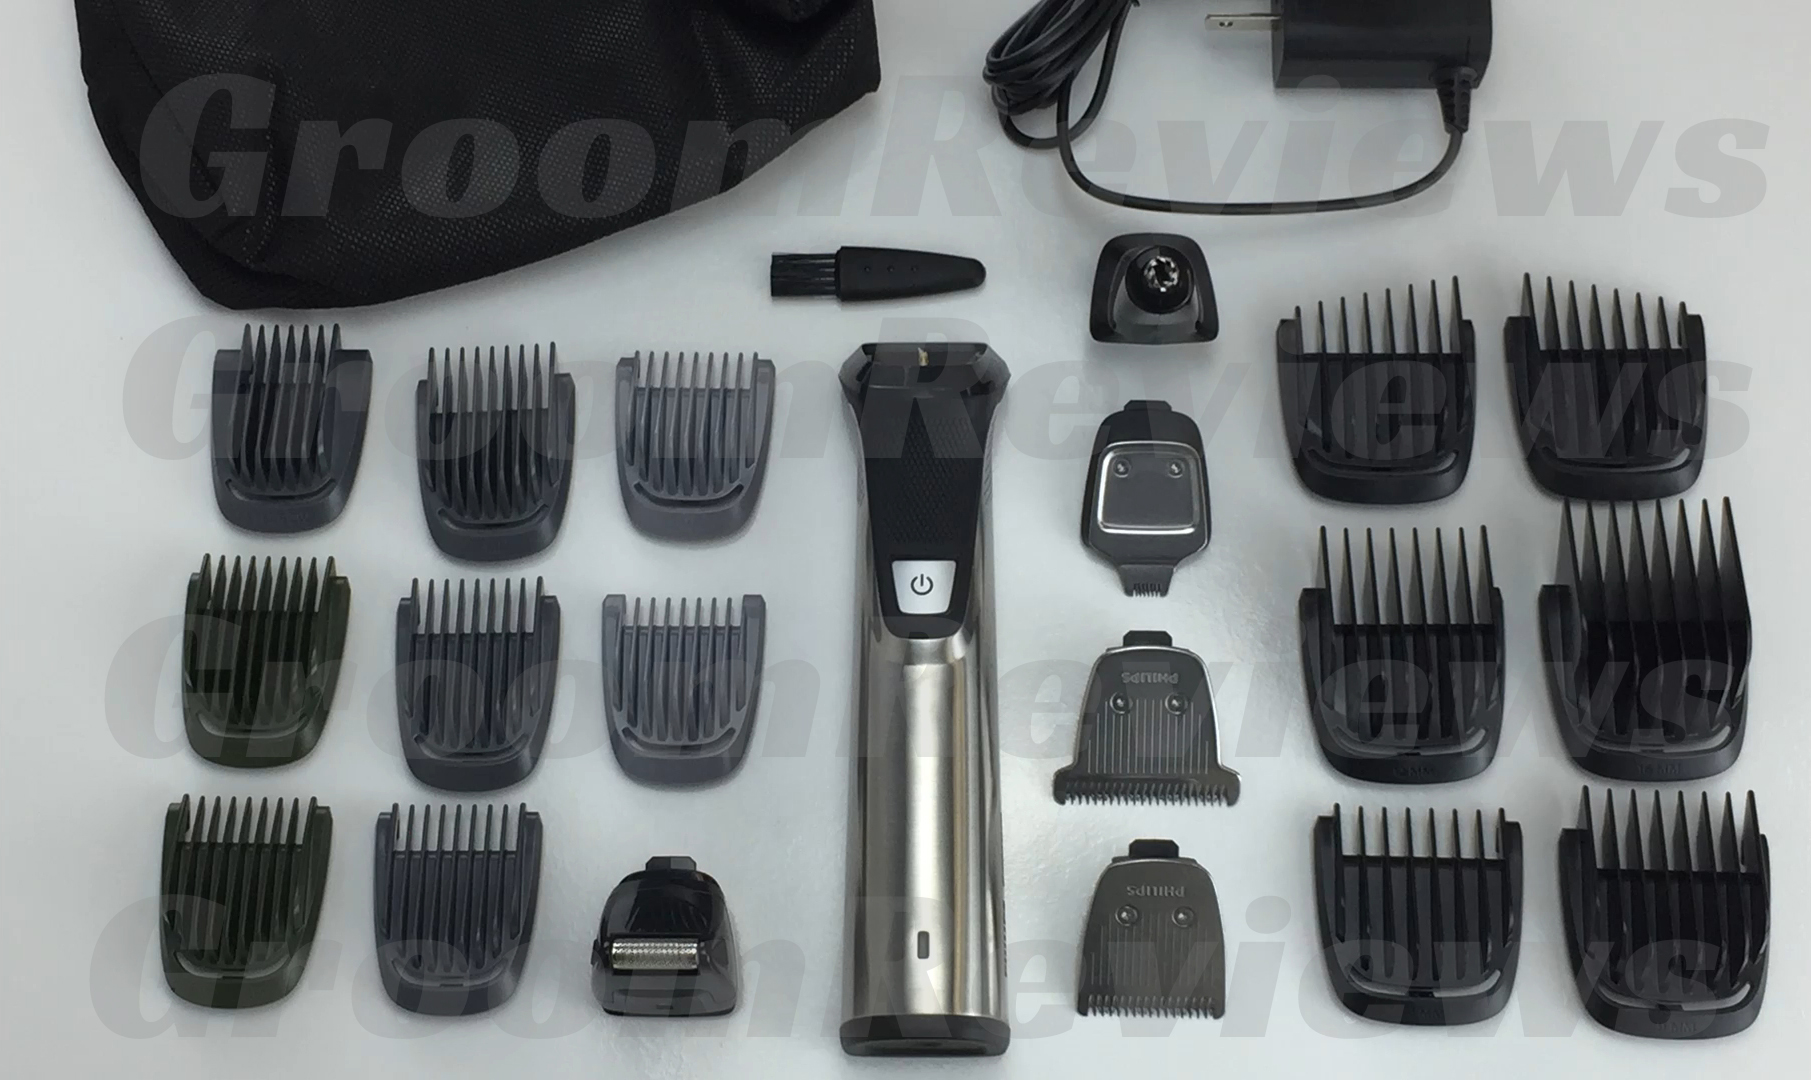 philips series 7000 multi grooming kit